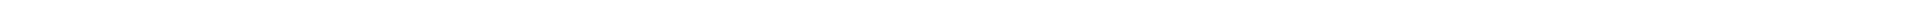 Лечение зубов - цены Алматы, Астана (Нур-Султан), Атырау, Усть-Каменогорск, Уральск, Кокшетау в Казахстане, фото 7